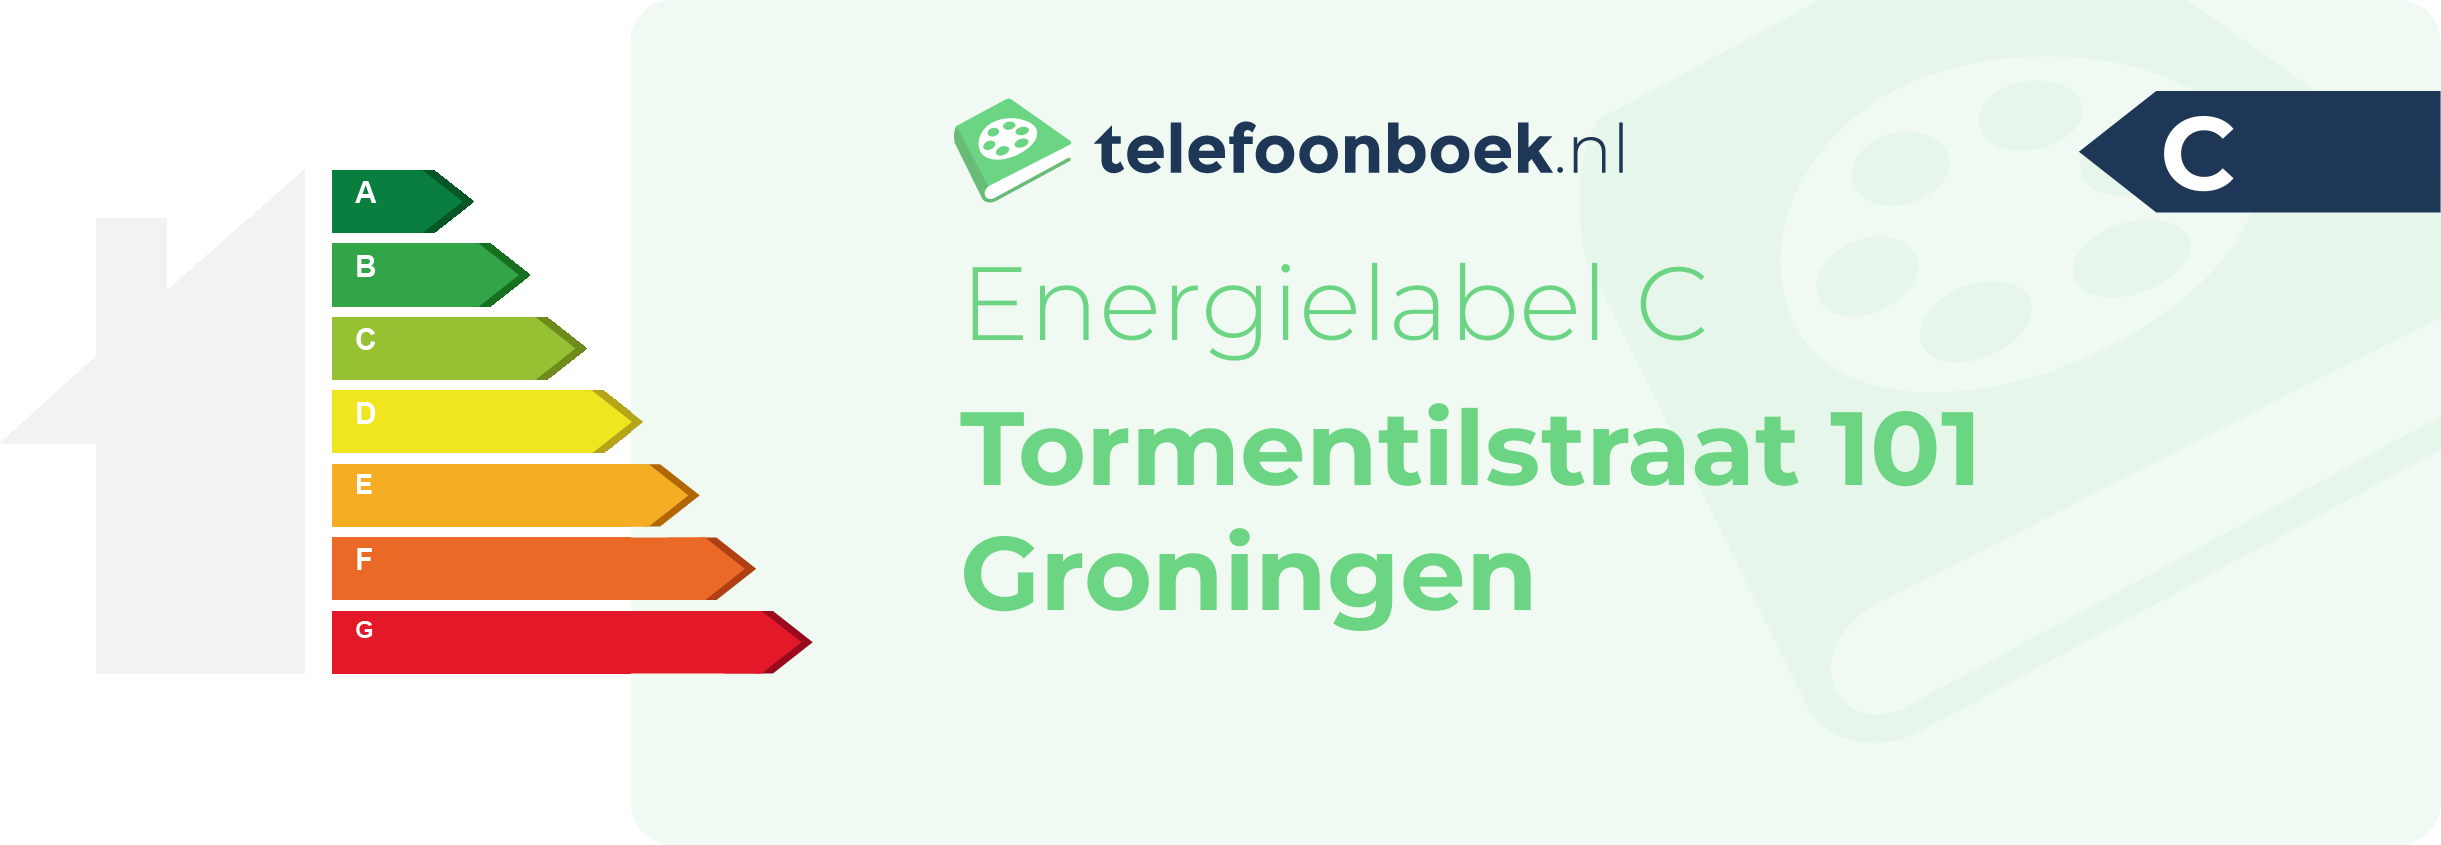 Energielabel Tormentilstraat 101 Groningen